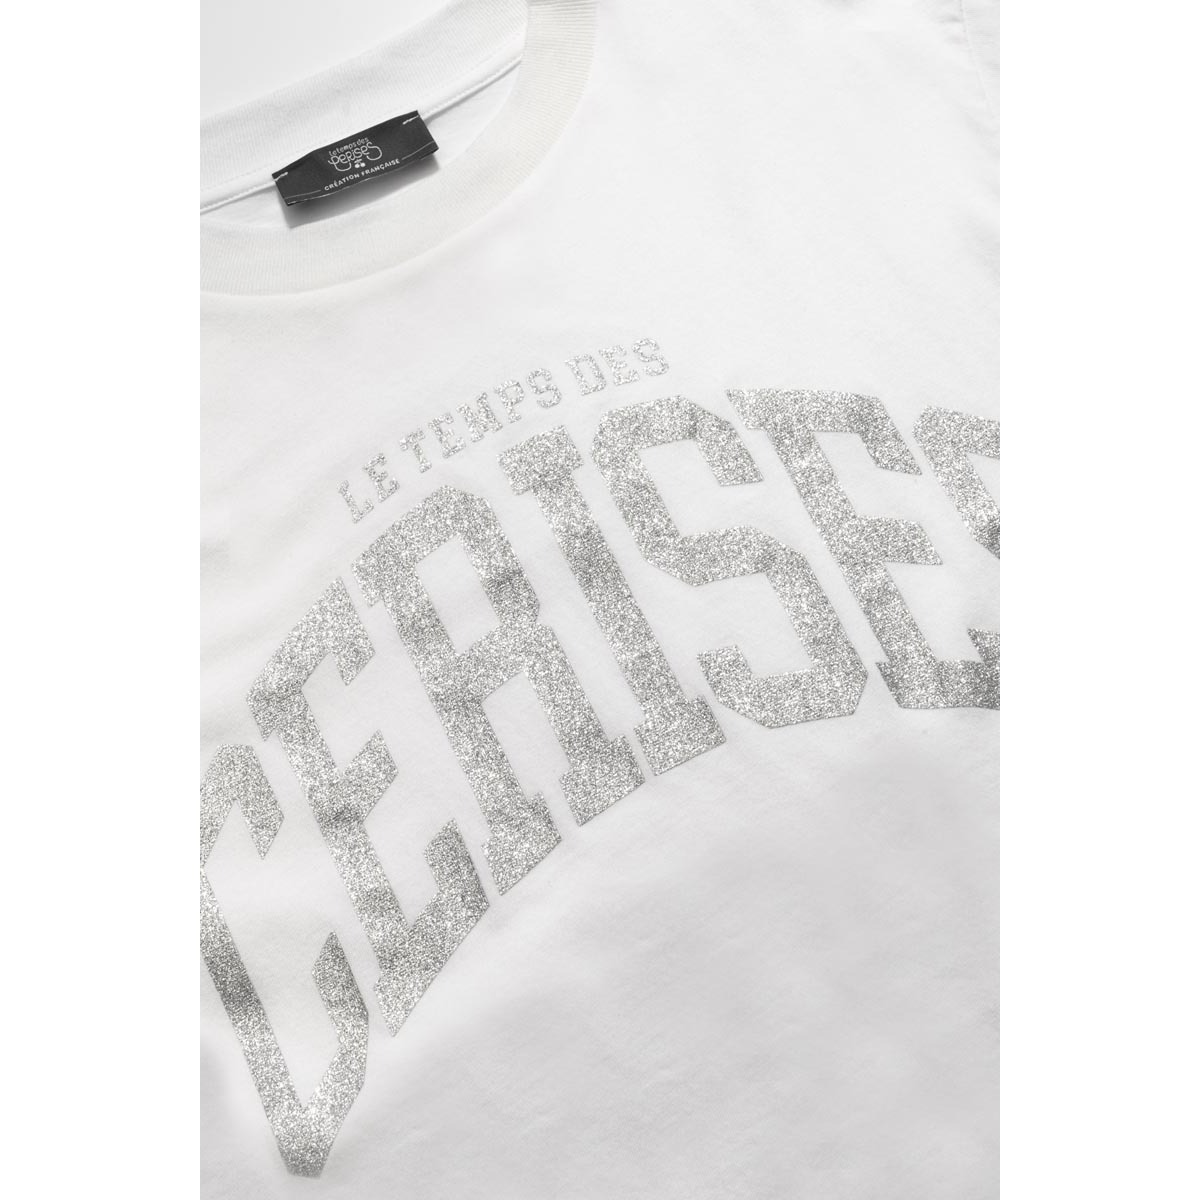 Le Temps des Cerises Blanc T-shirt claudegi blanc imprimé 0X9linpw